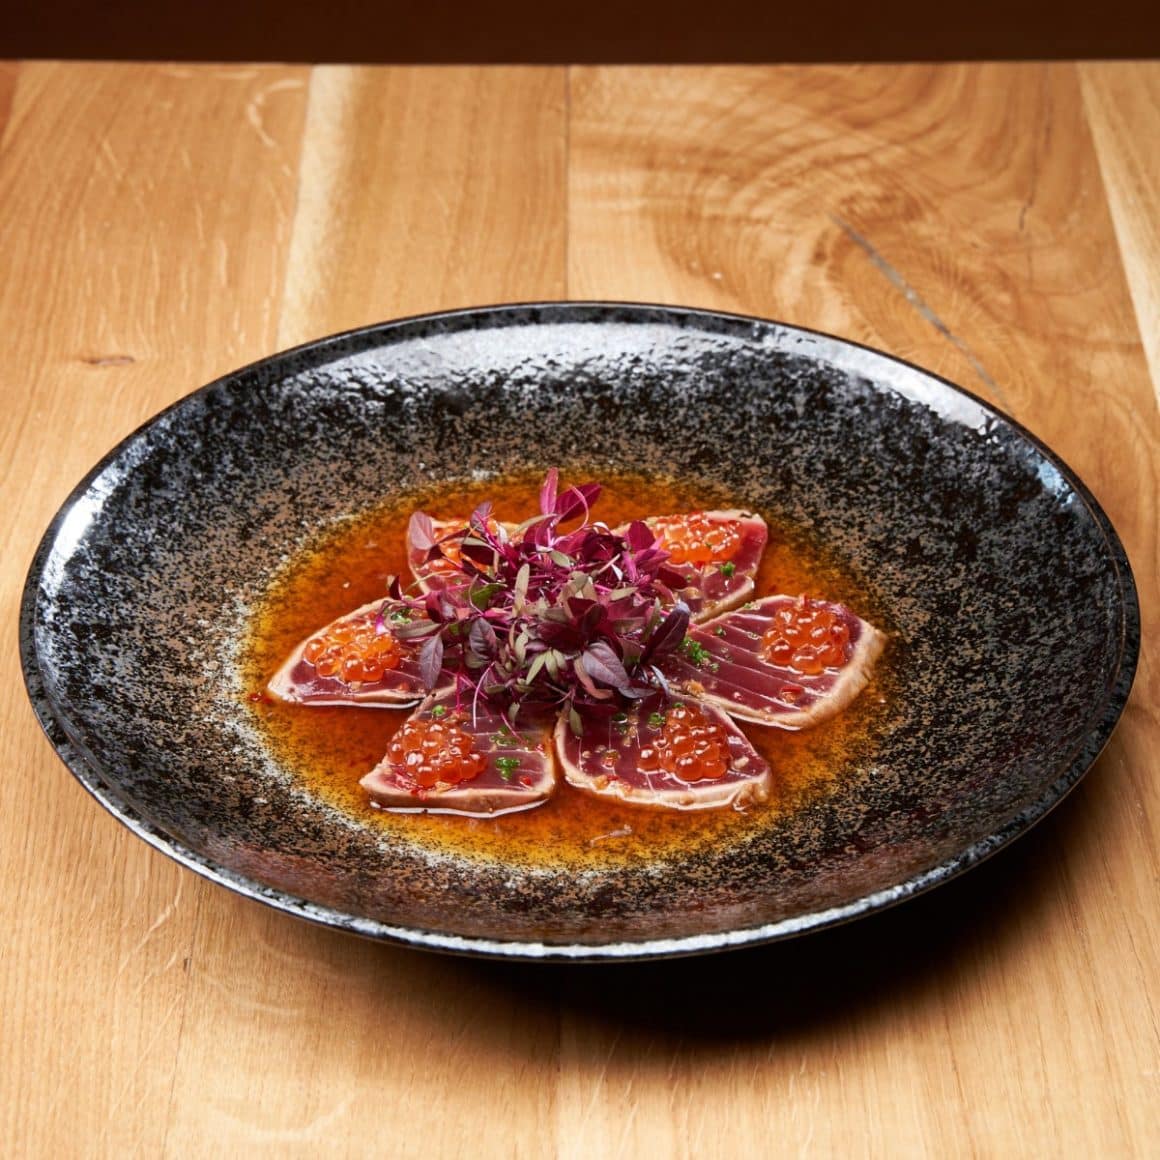 tonul BlueFin tăiat în stil sashimi, asezonat perfect cu sos ponzu, o atingere picantă de ardei iute și completat de textura crocantă a caviarului roșu.